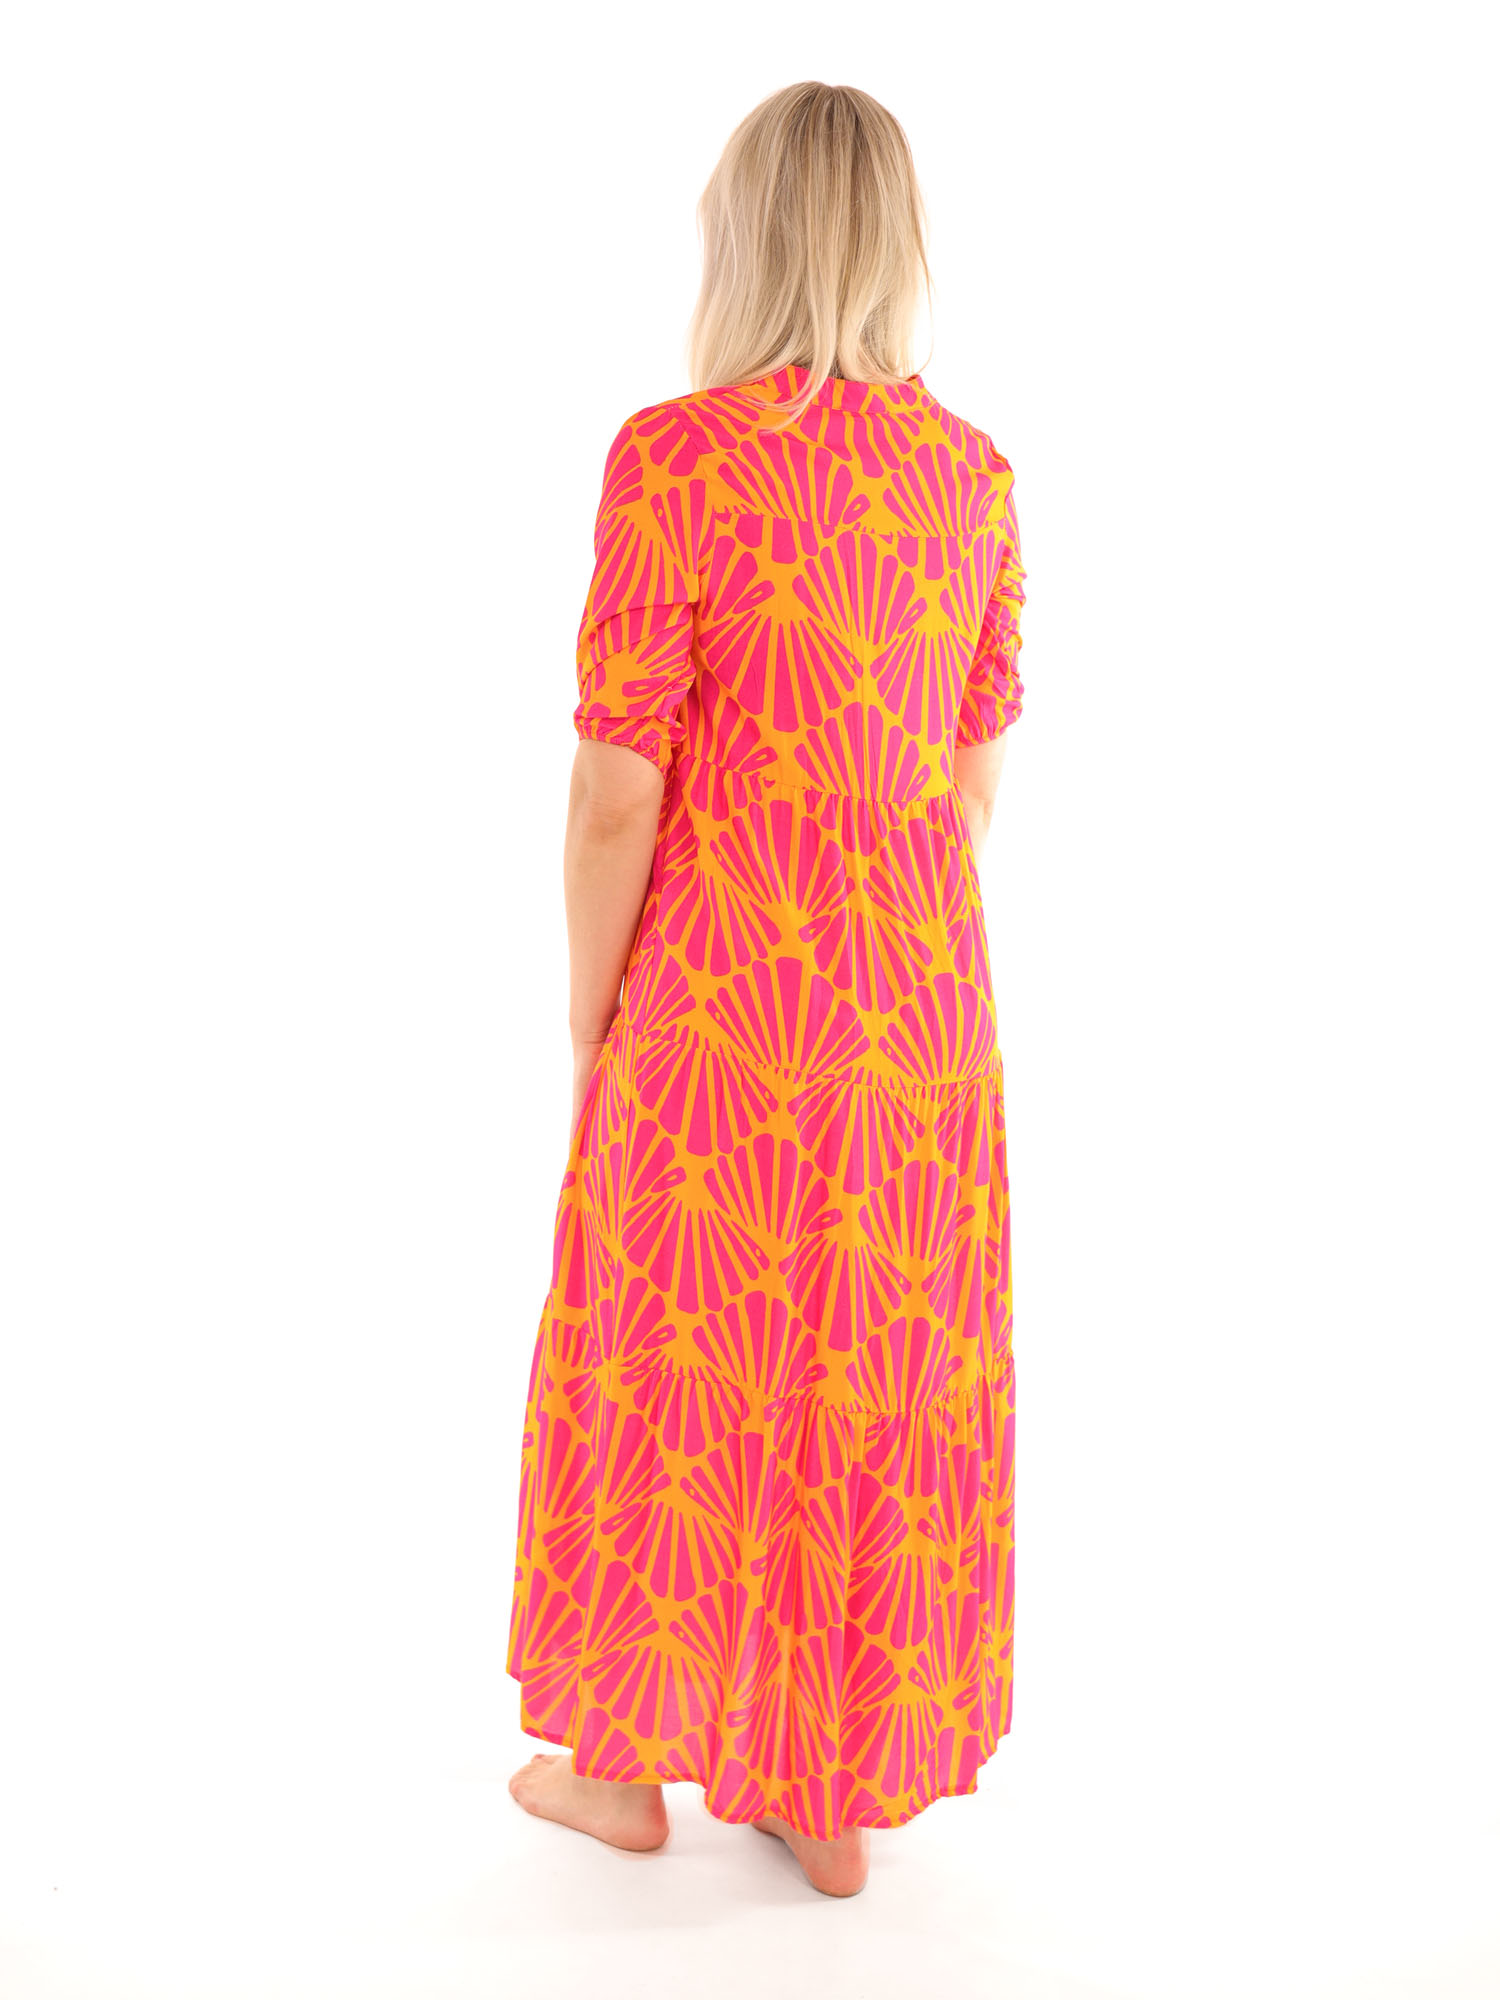 stropdas Sociaal zelfstandig naamwoord Oranje lange jurk met fuchsia print van Savinni